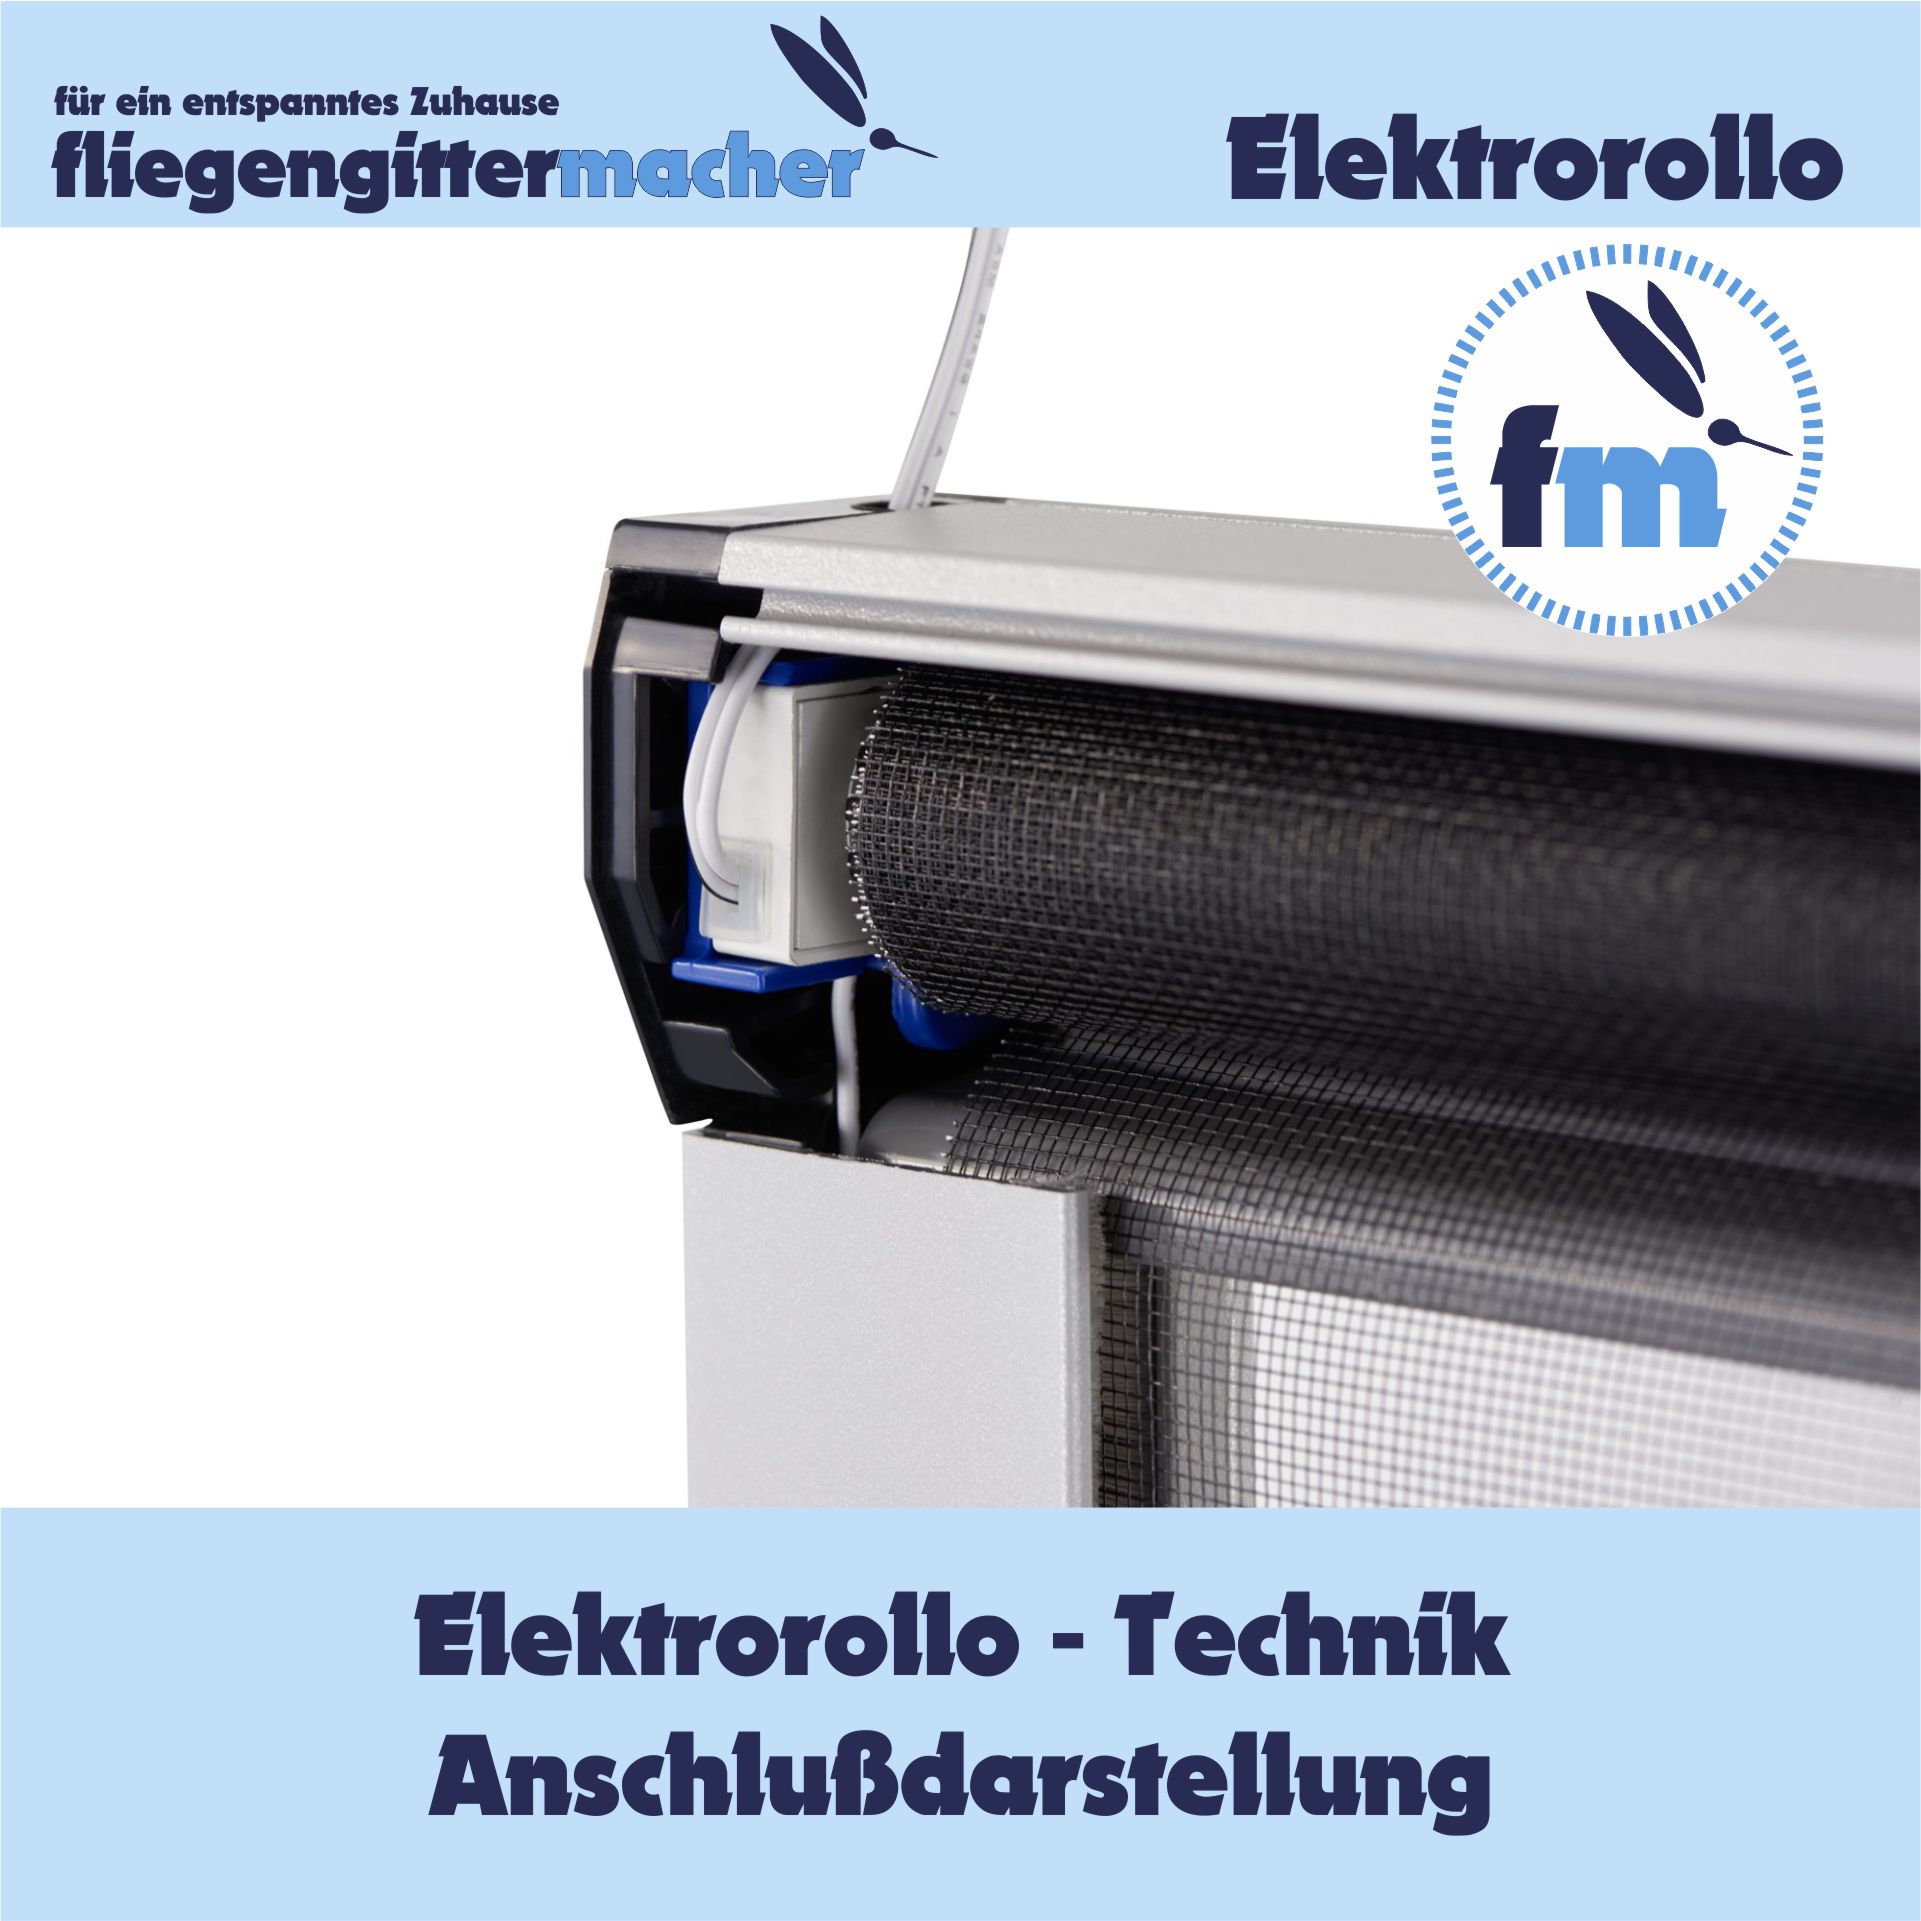 Insektenschutz Elektrorollo mit Smartantrieb | www.fliegengittermacher.de | Fliegengitter nach Maß